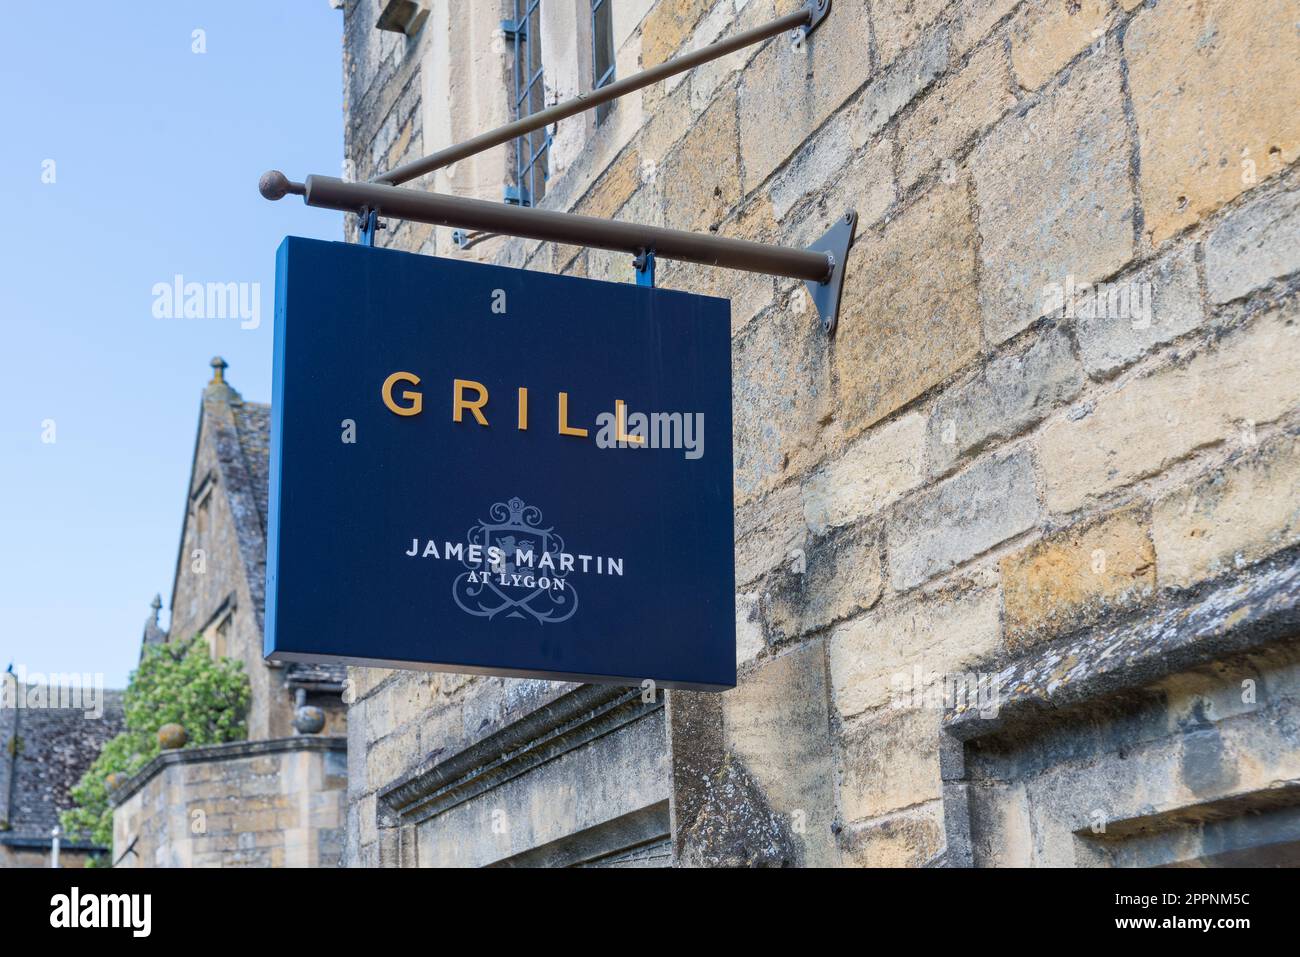 The Grill by James Martin im Lygon Arms Hotel im hübschen Dorf Cotswold am Broadway in Worcestershire, England, Großbritannien Stockfoto